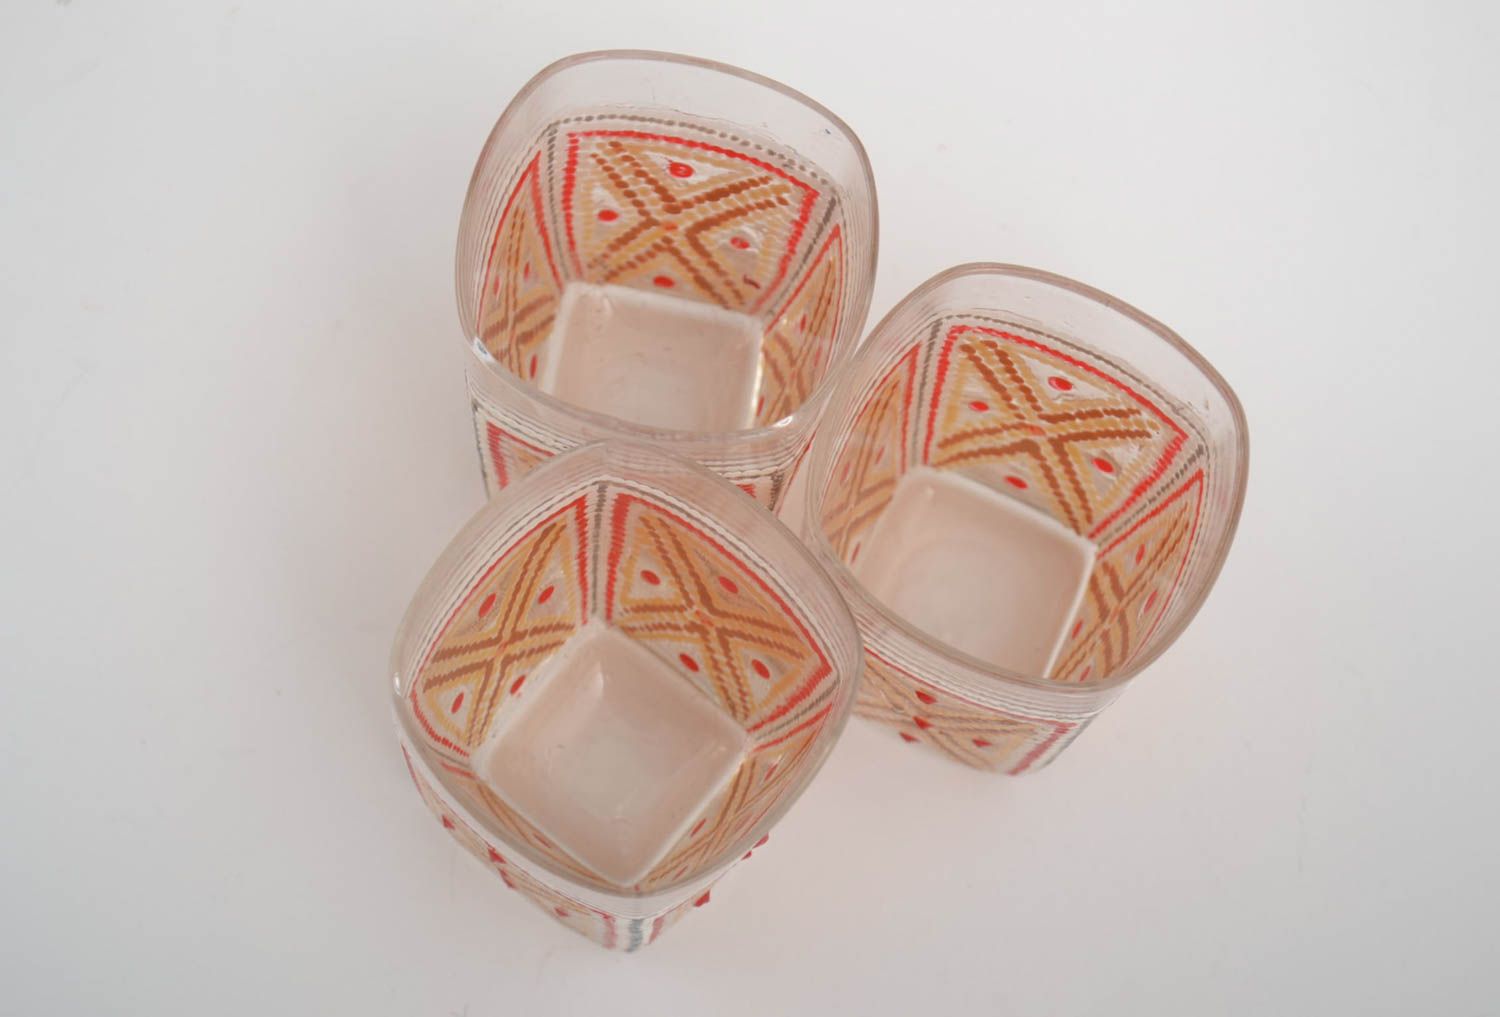 Handmade glass wine glass shot glass set of 3 items designer souvenir decor idea photo 3